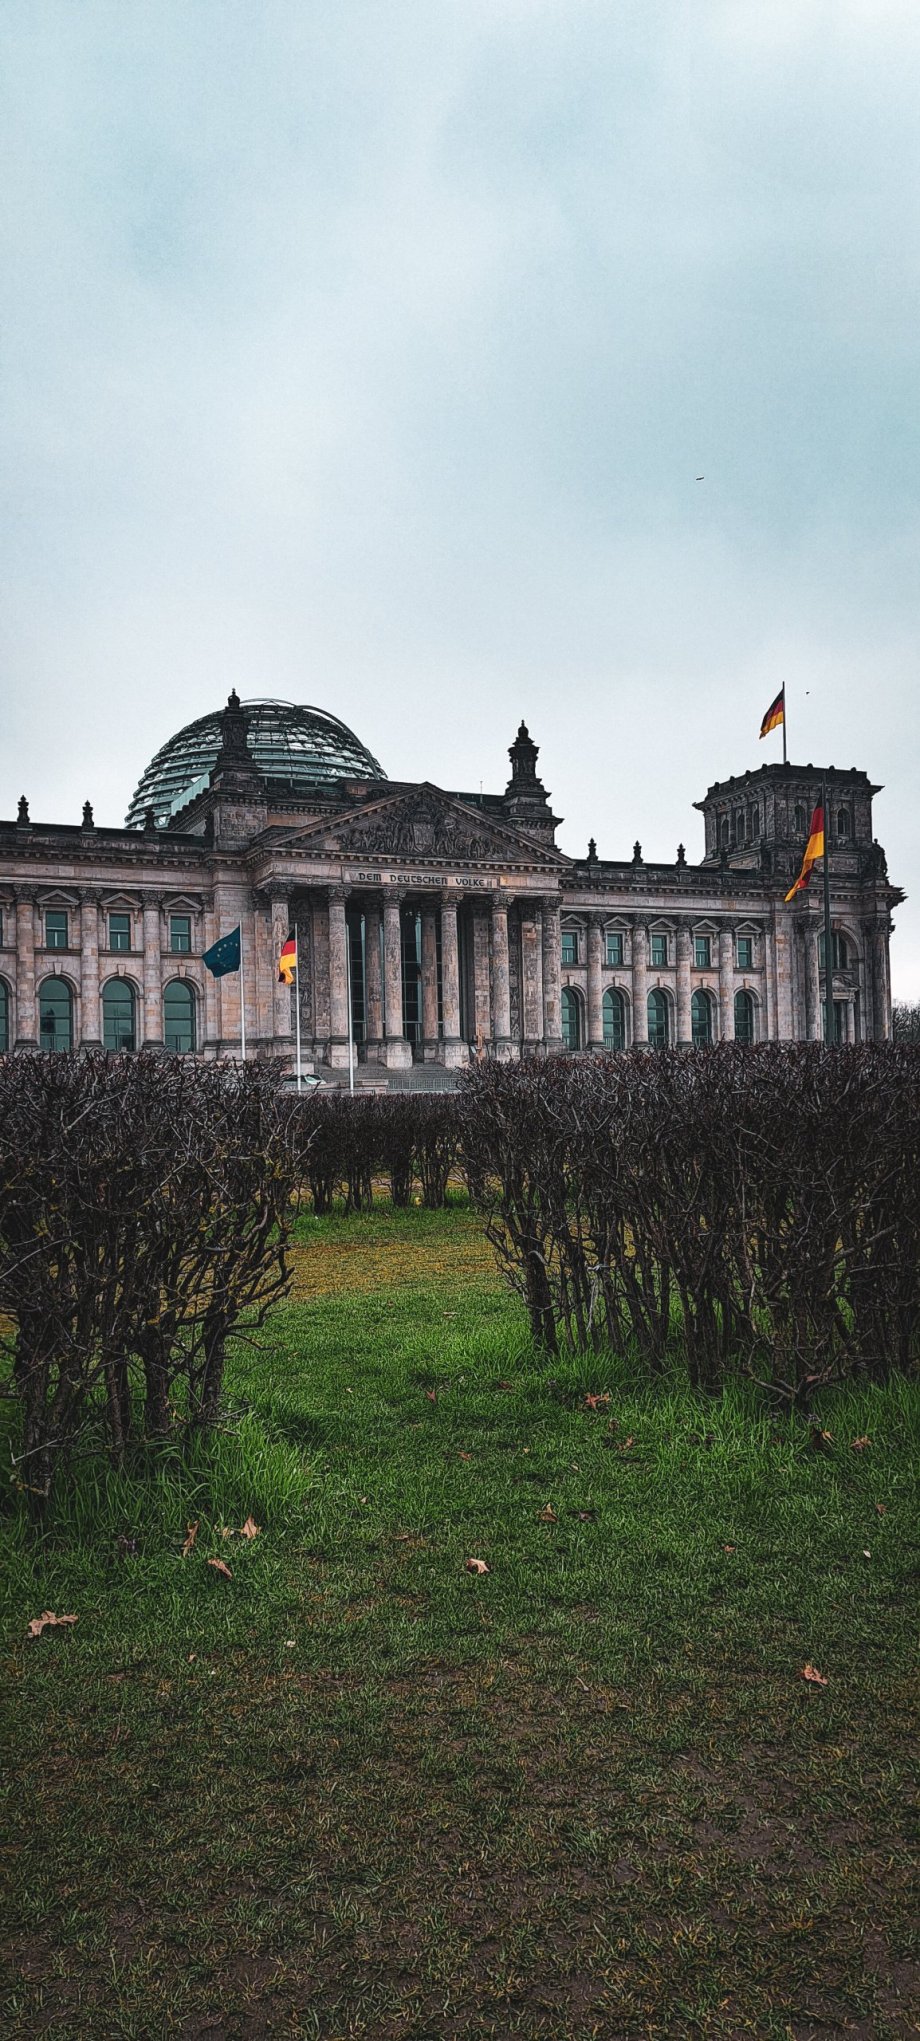 Budova Říšského sněmu v Berlíně - Reichstagsgebäude